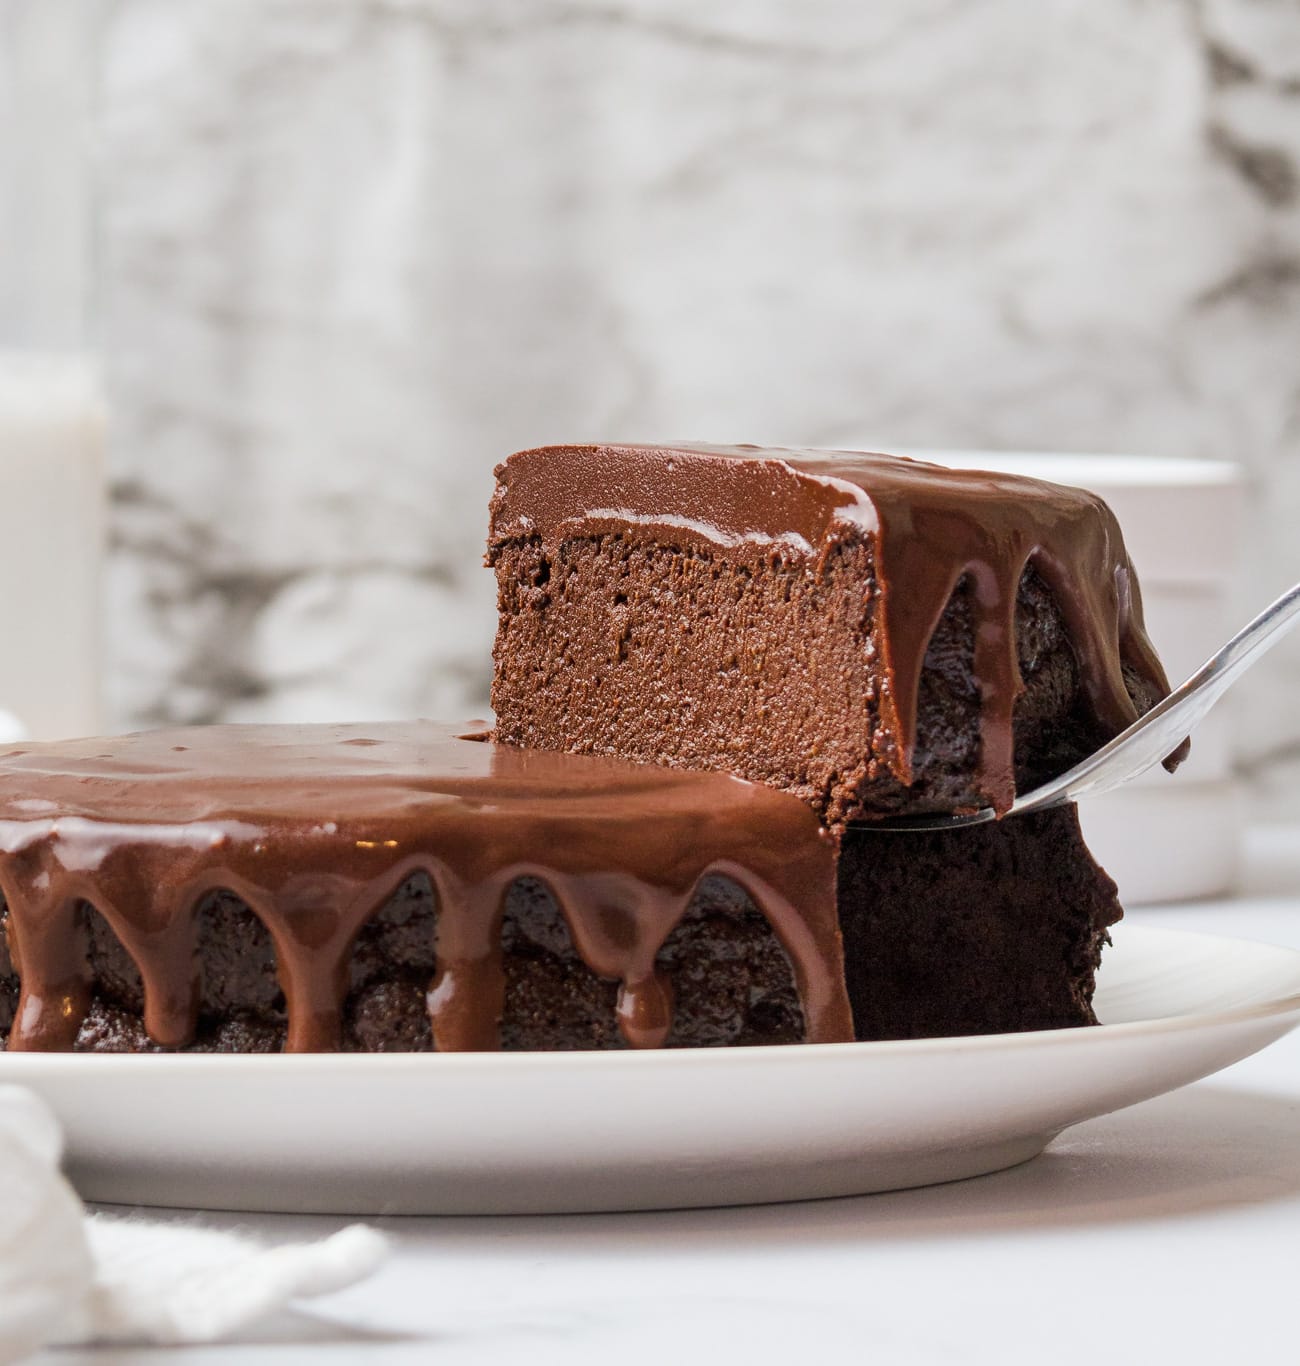 Chocolate-Chocolate Cake | Chocolate cake recipe easy, Homemade chocolate  cake, Cake recipes easy homemade